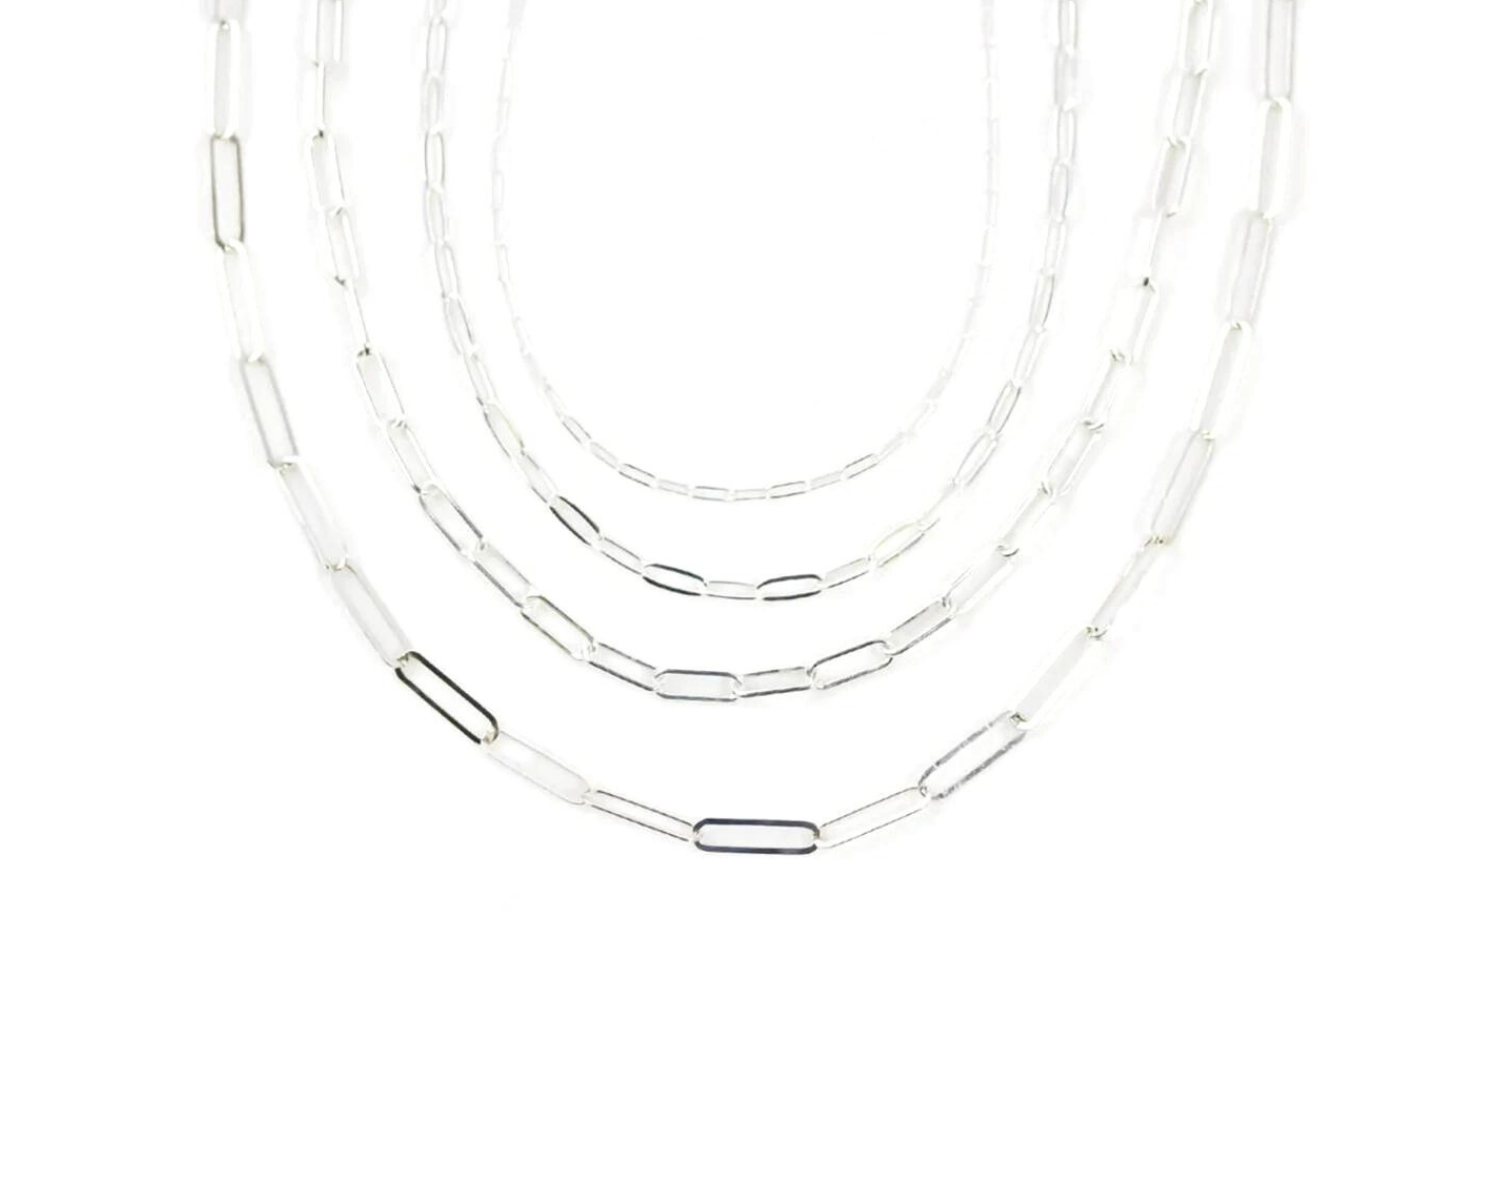 Mixed Media O-ring Necklace - Amy Latta Creations